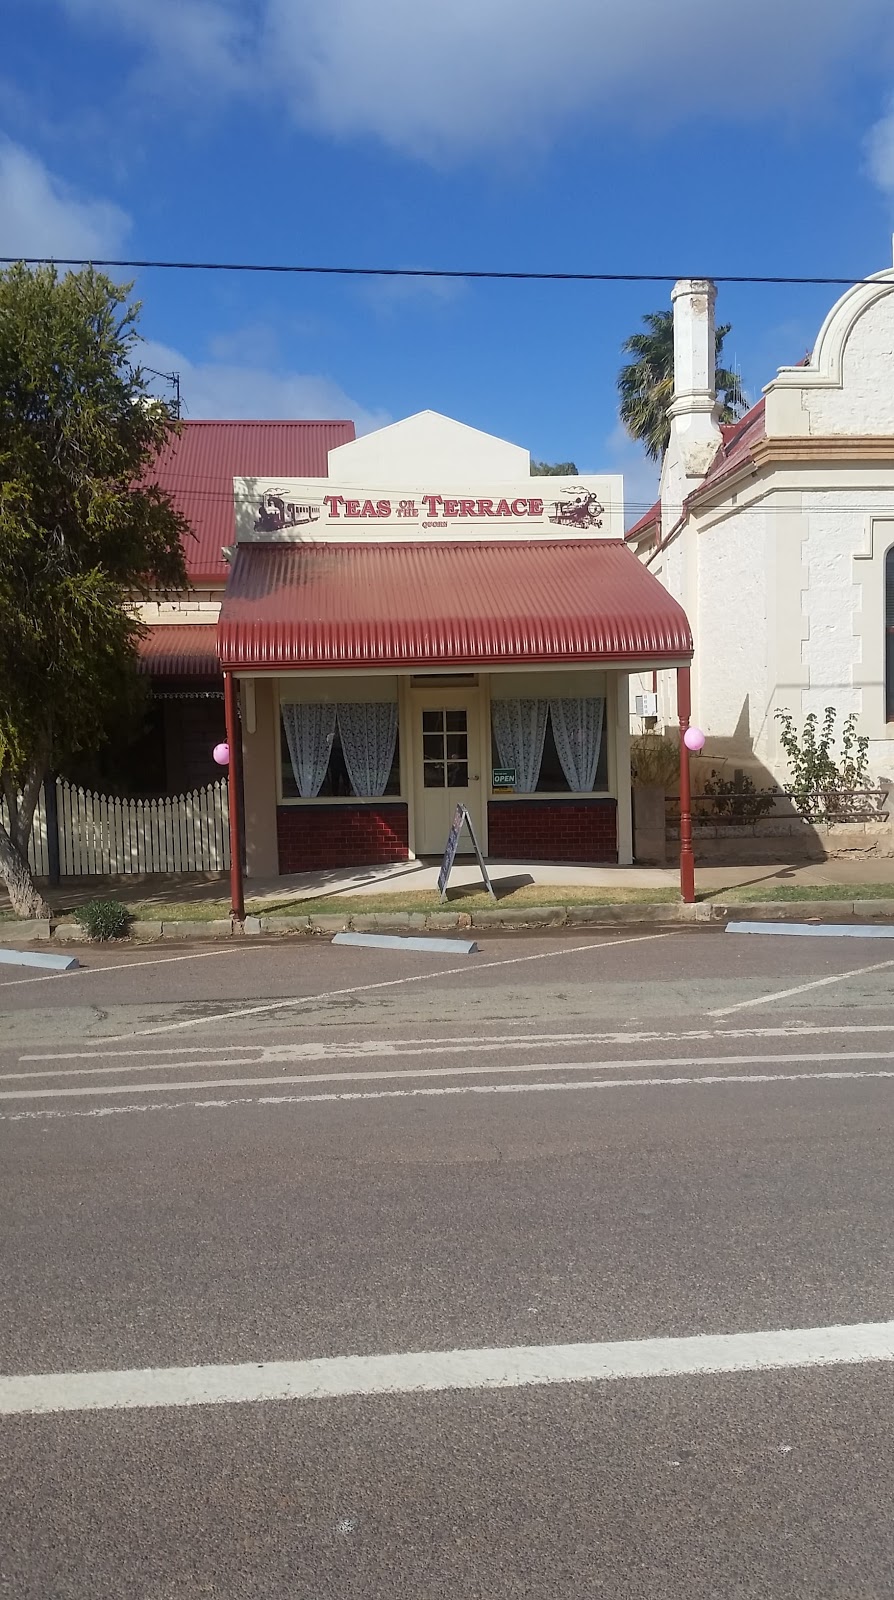 Teas on the Terrace Quorn | cafe | 7 Railway Terrace, Quorn SA 5433, Australia | 0428499696 OR +61 428 499 696